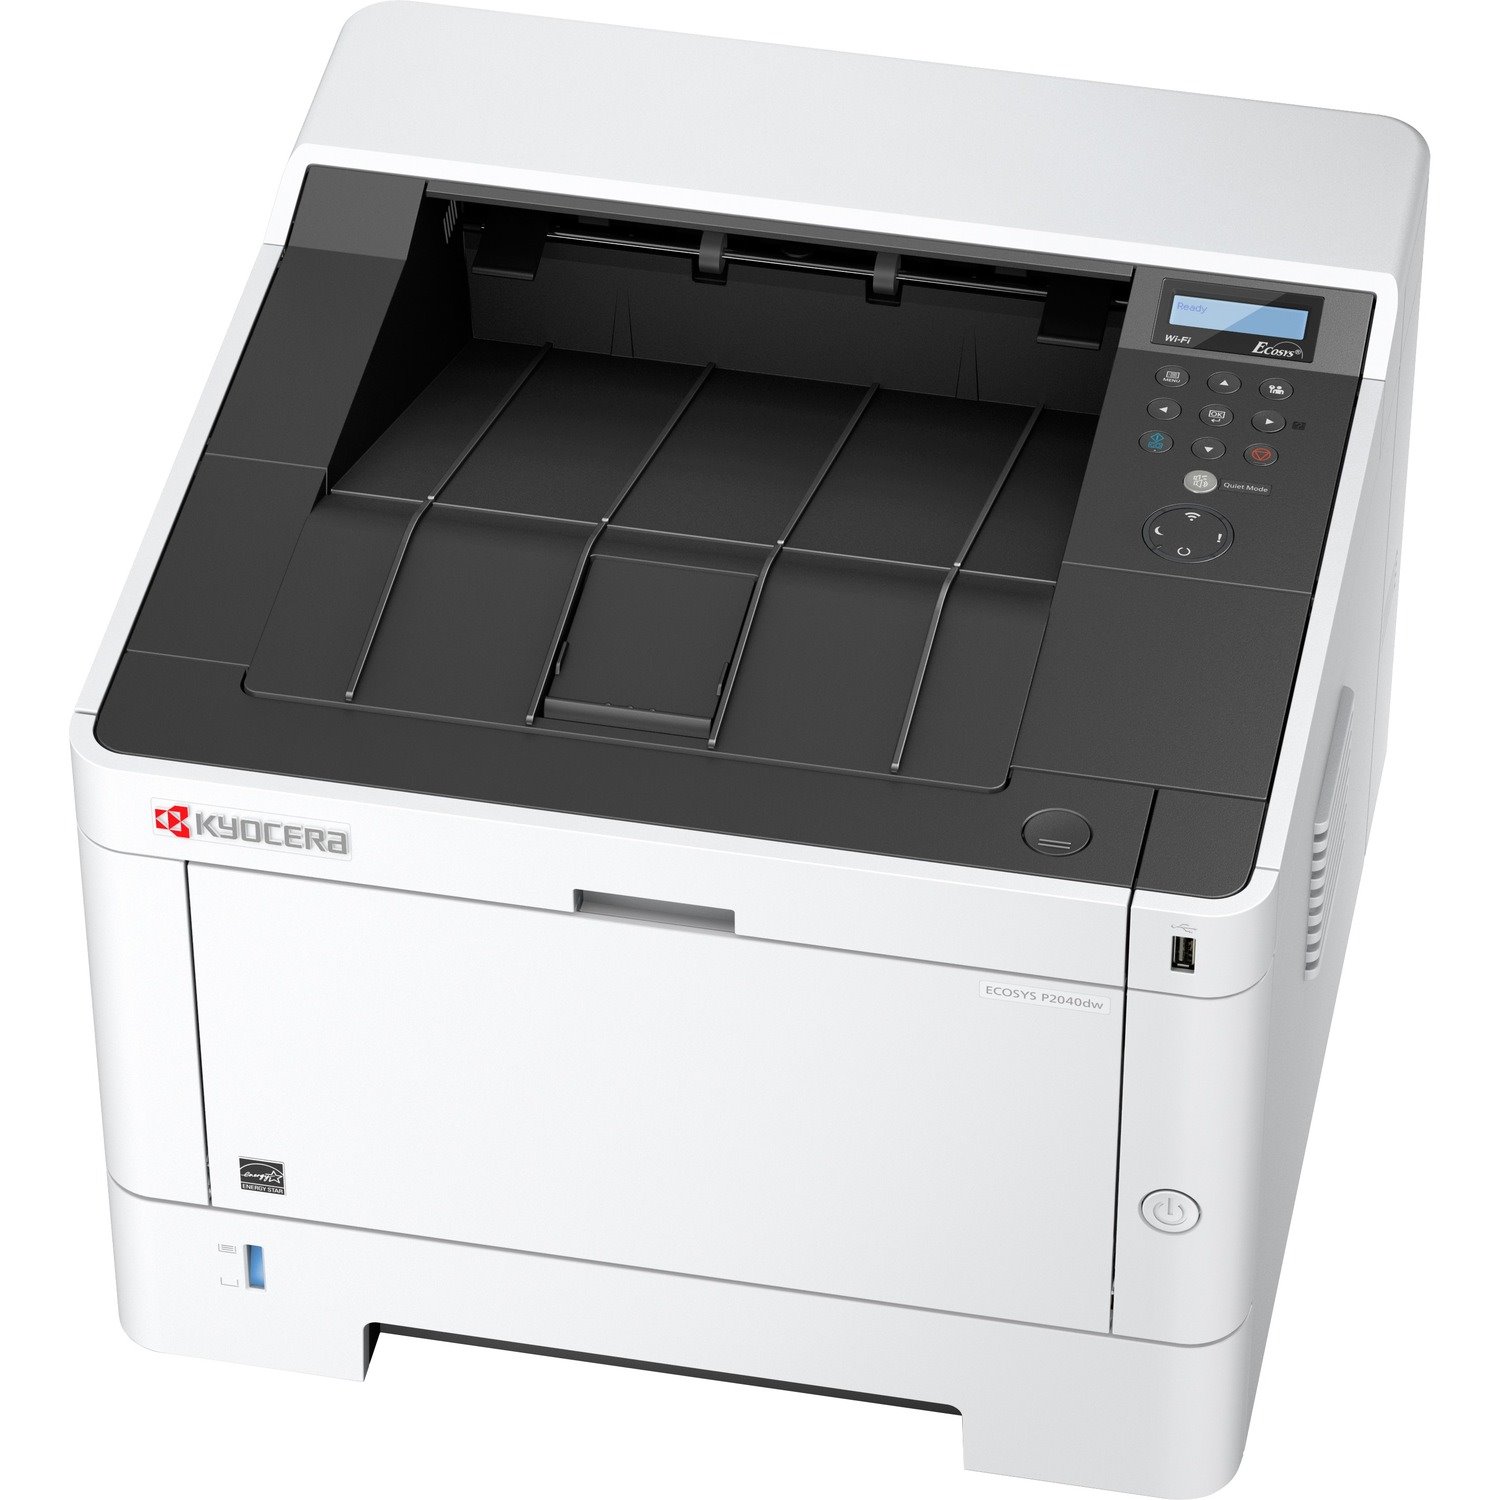 Kyocera Ecosys P2040dw Desktop Laser Printer - Monochrome